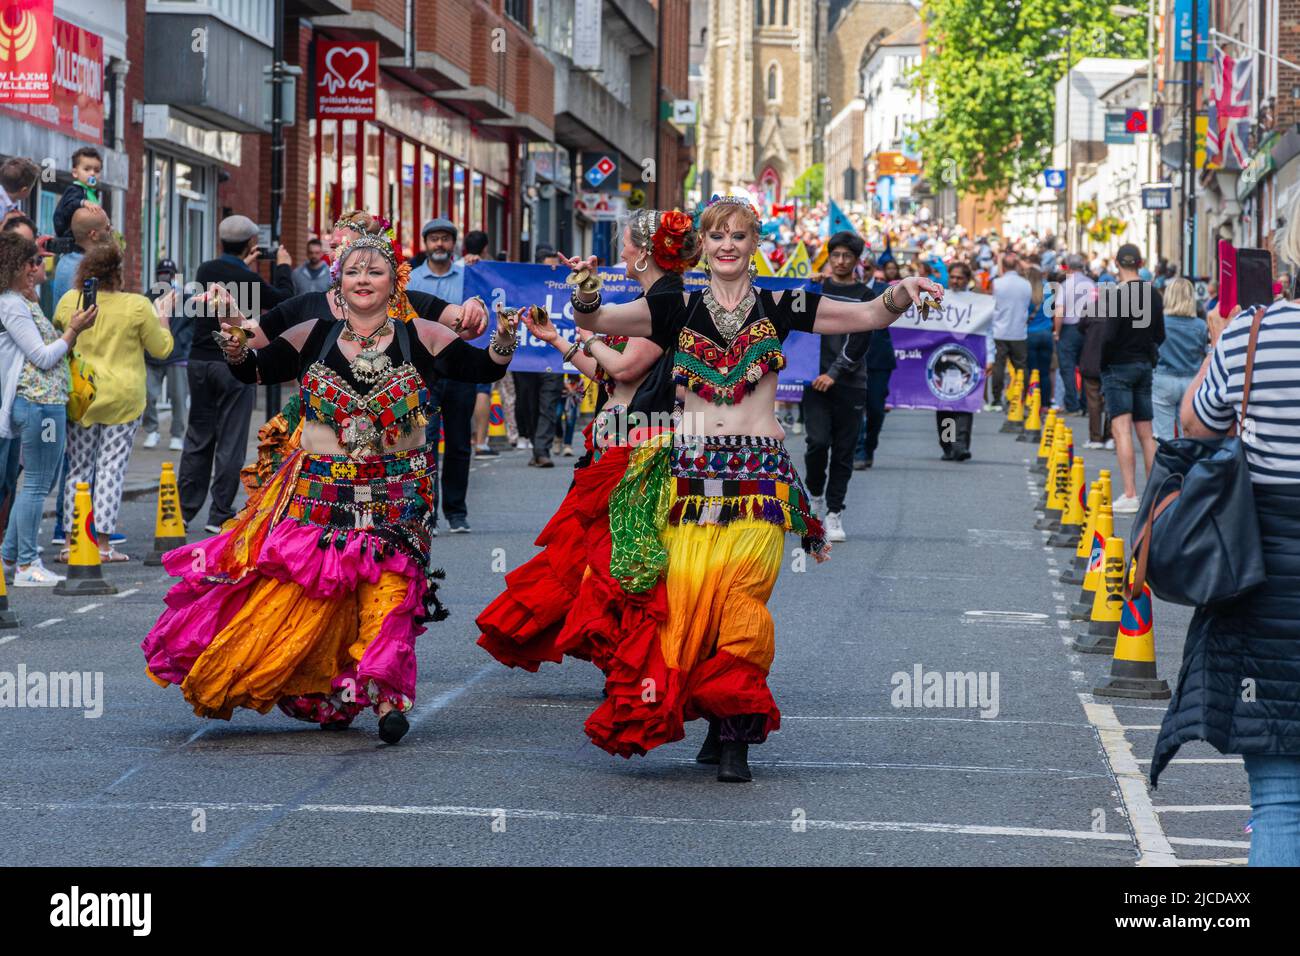 Danseuses du ventre vêtues de costumes colorés prenant part au Grand Parade à Victoria Day, un événement annuel à Aldershot, Hampshire, Angleterre, Royaume-Uni Banque D'Images